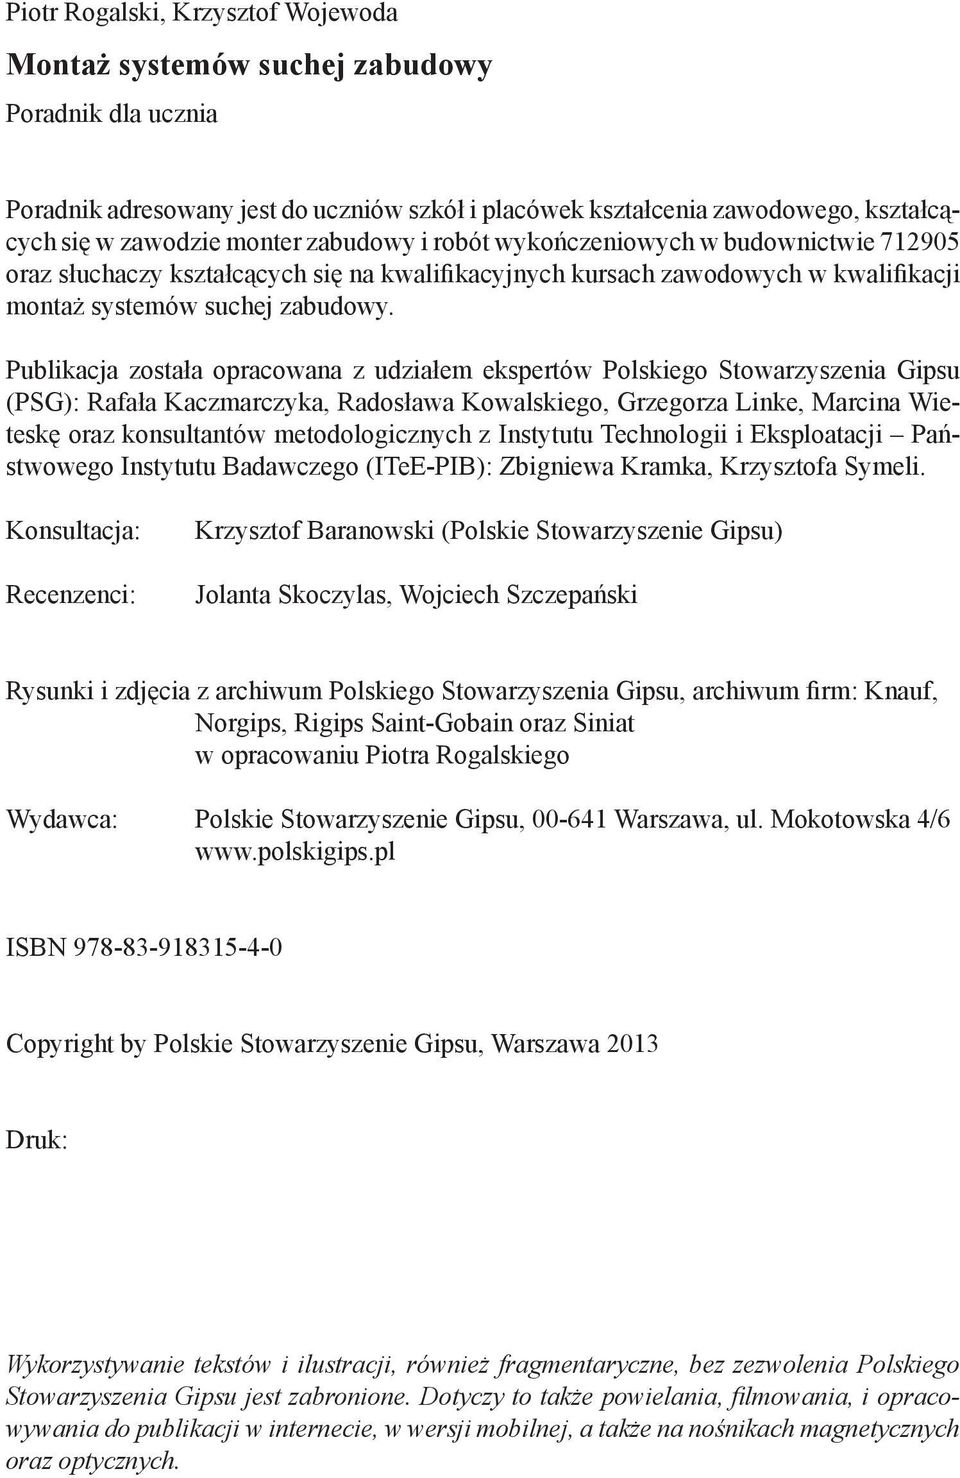 Publikacja została opracowana z udziałem ekspertów Polskiego Stowarzyszenia Gipsu (PSG): Rafała Kaczmarczyka, Radosława Kowalskiego, Grzegorza Linke, Marcina Wieteskę oraz konsultantów